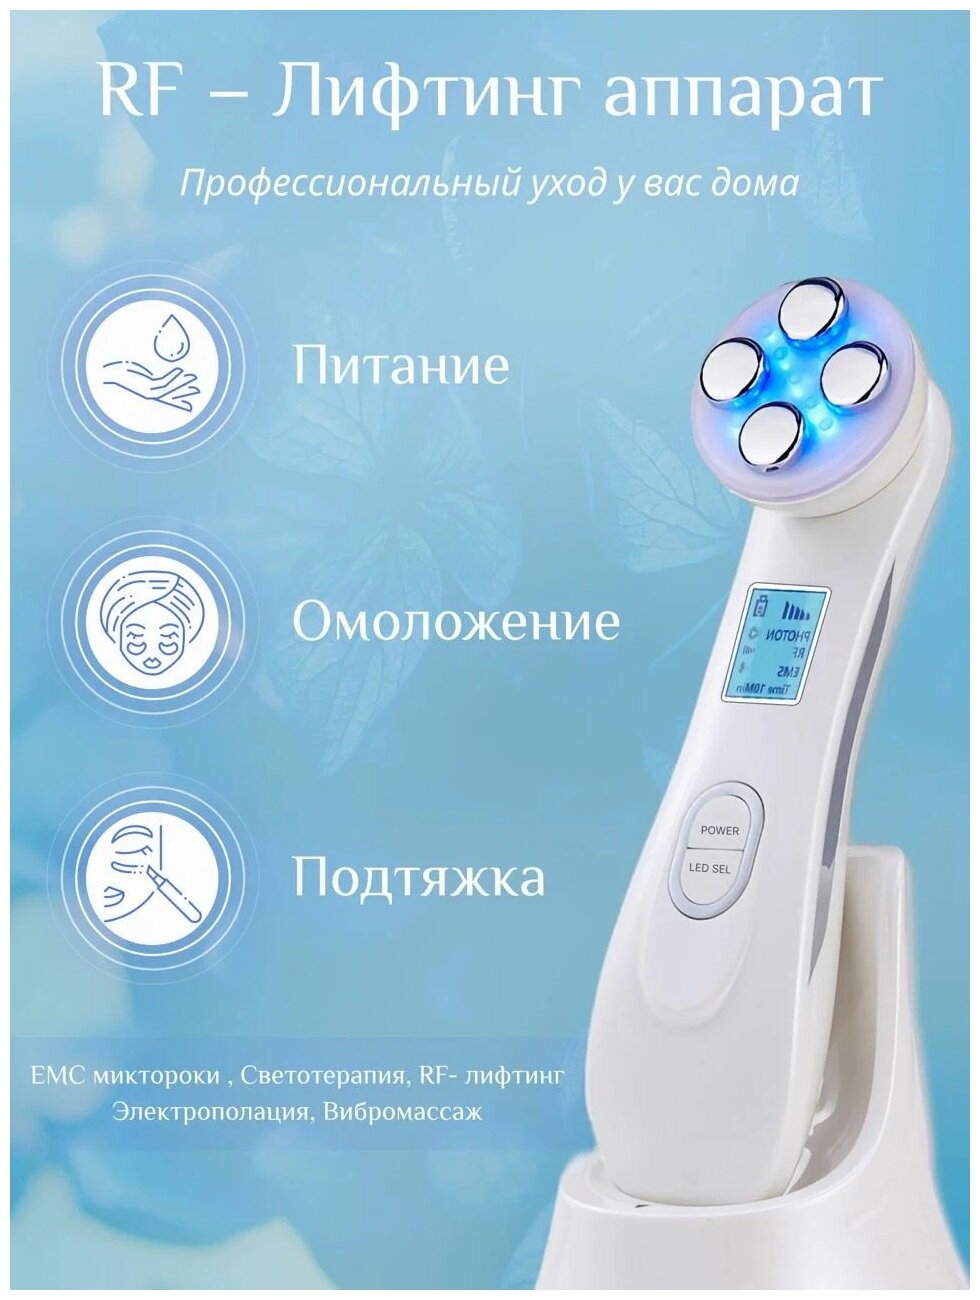 Косметологический аппарат, массажер для лица с эффектом лифтинга, микротоки, омоложение